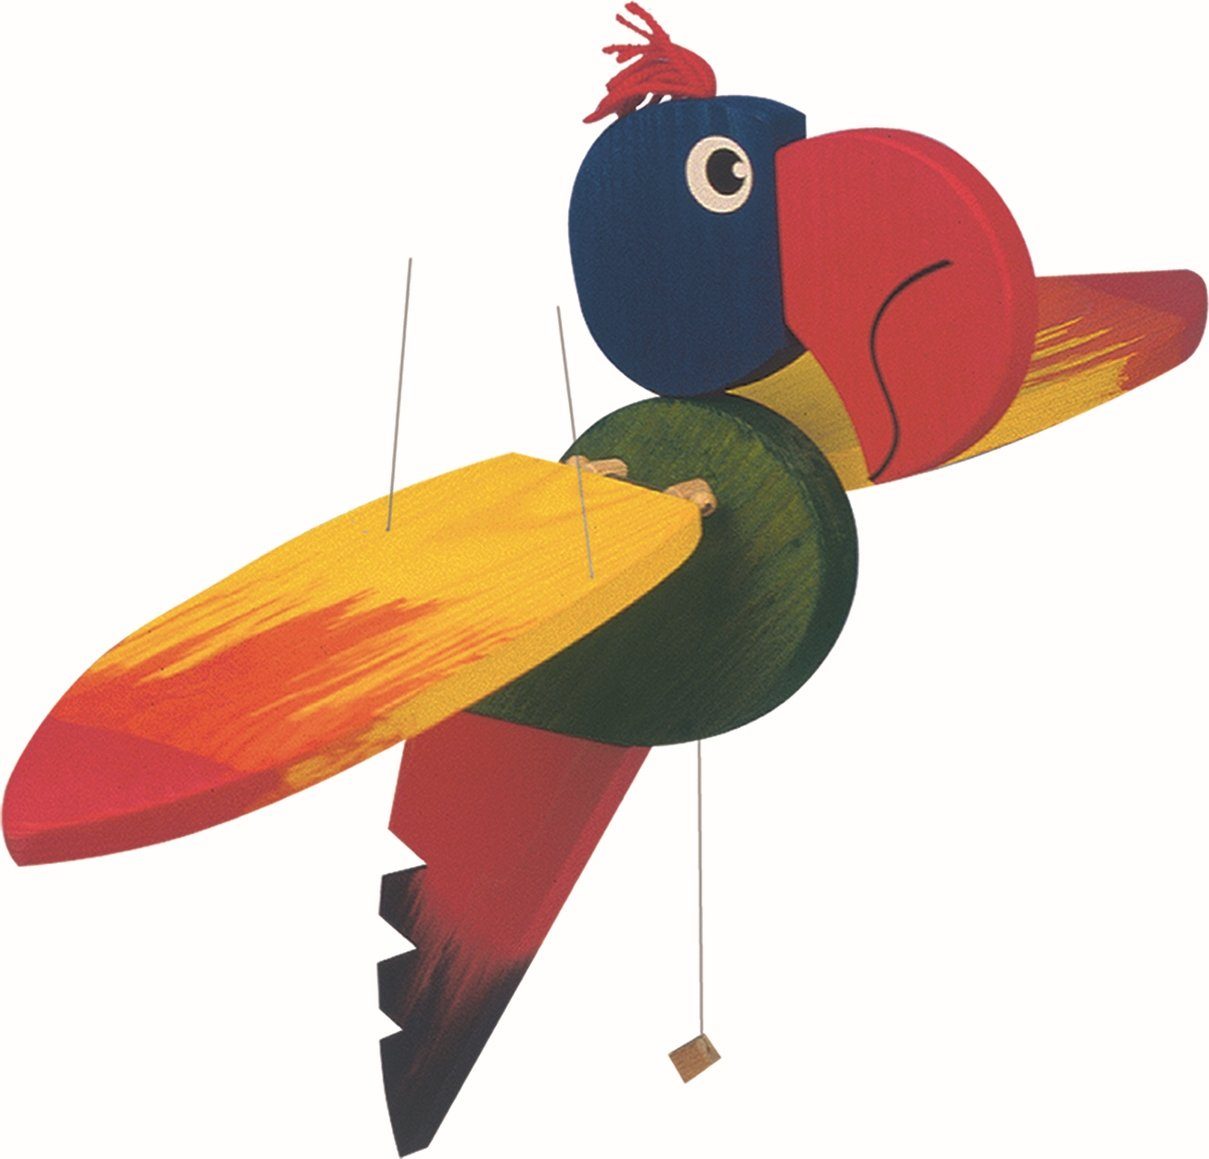 Woodyland Lernspielzeug 10214 Holz - Schwingtier Papagei mit einer Flügelspannweite von 50cm